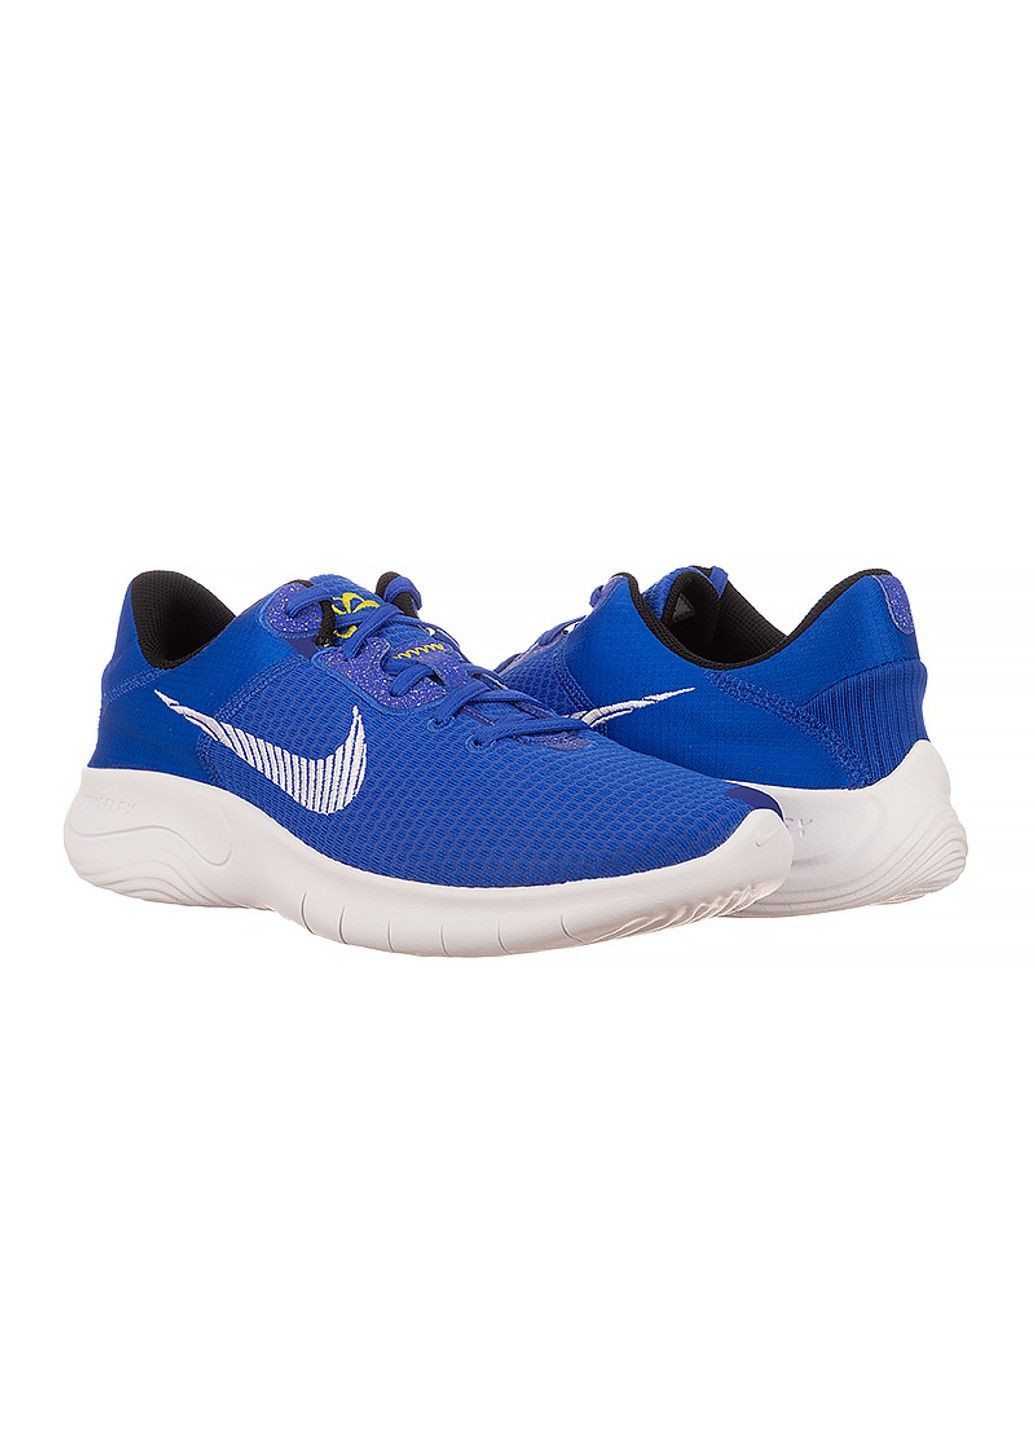 Голубые демисезонные кроссовки flex experience rn 11 nn Nike